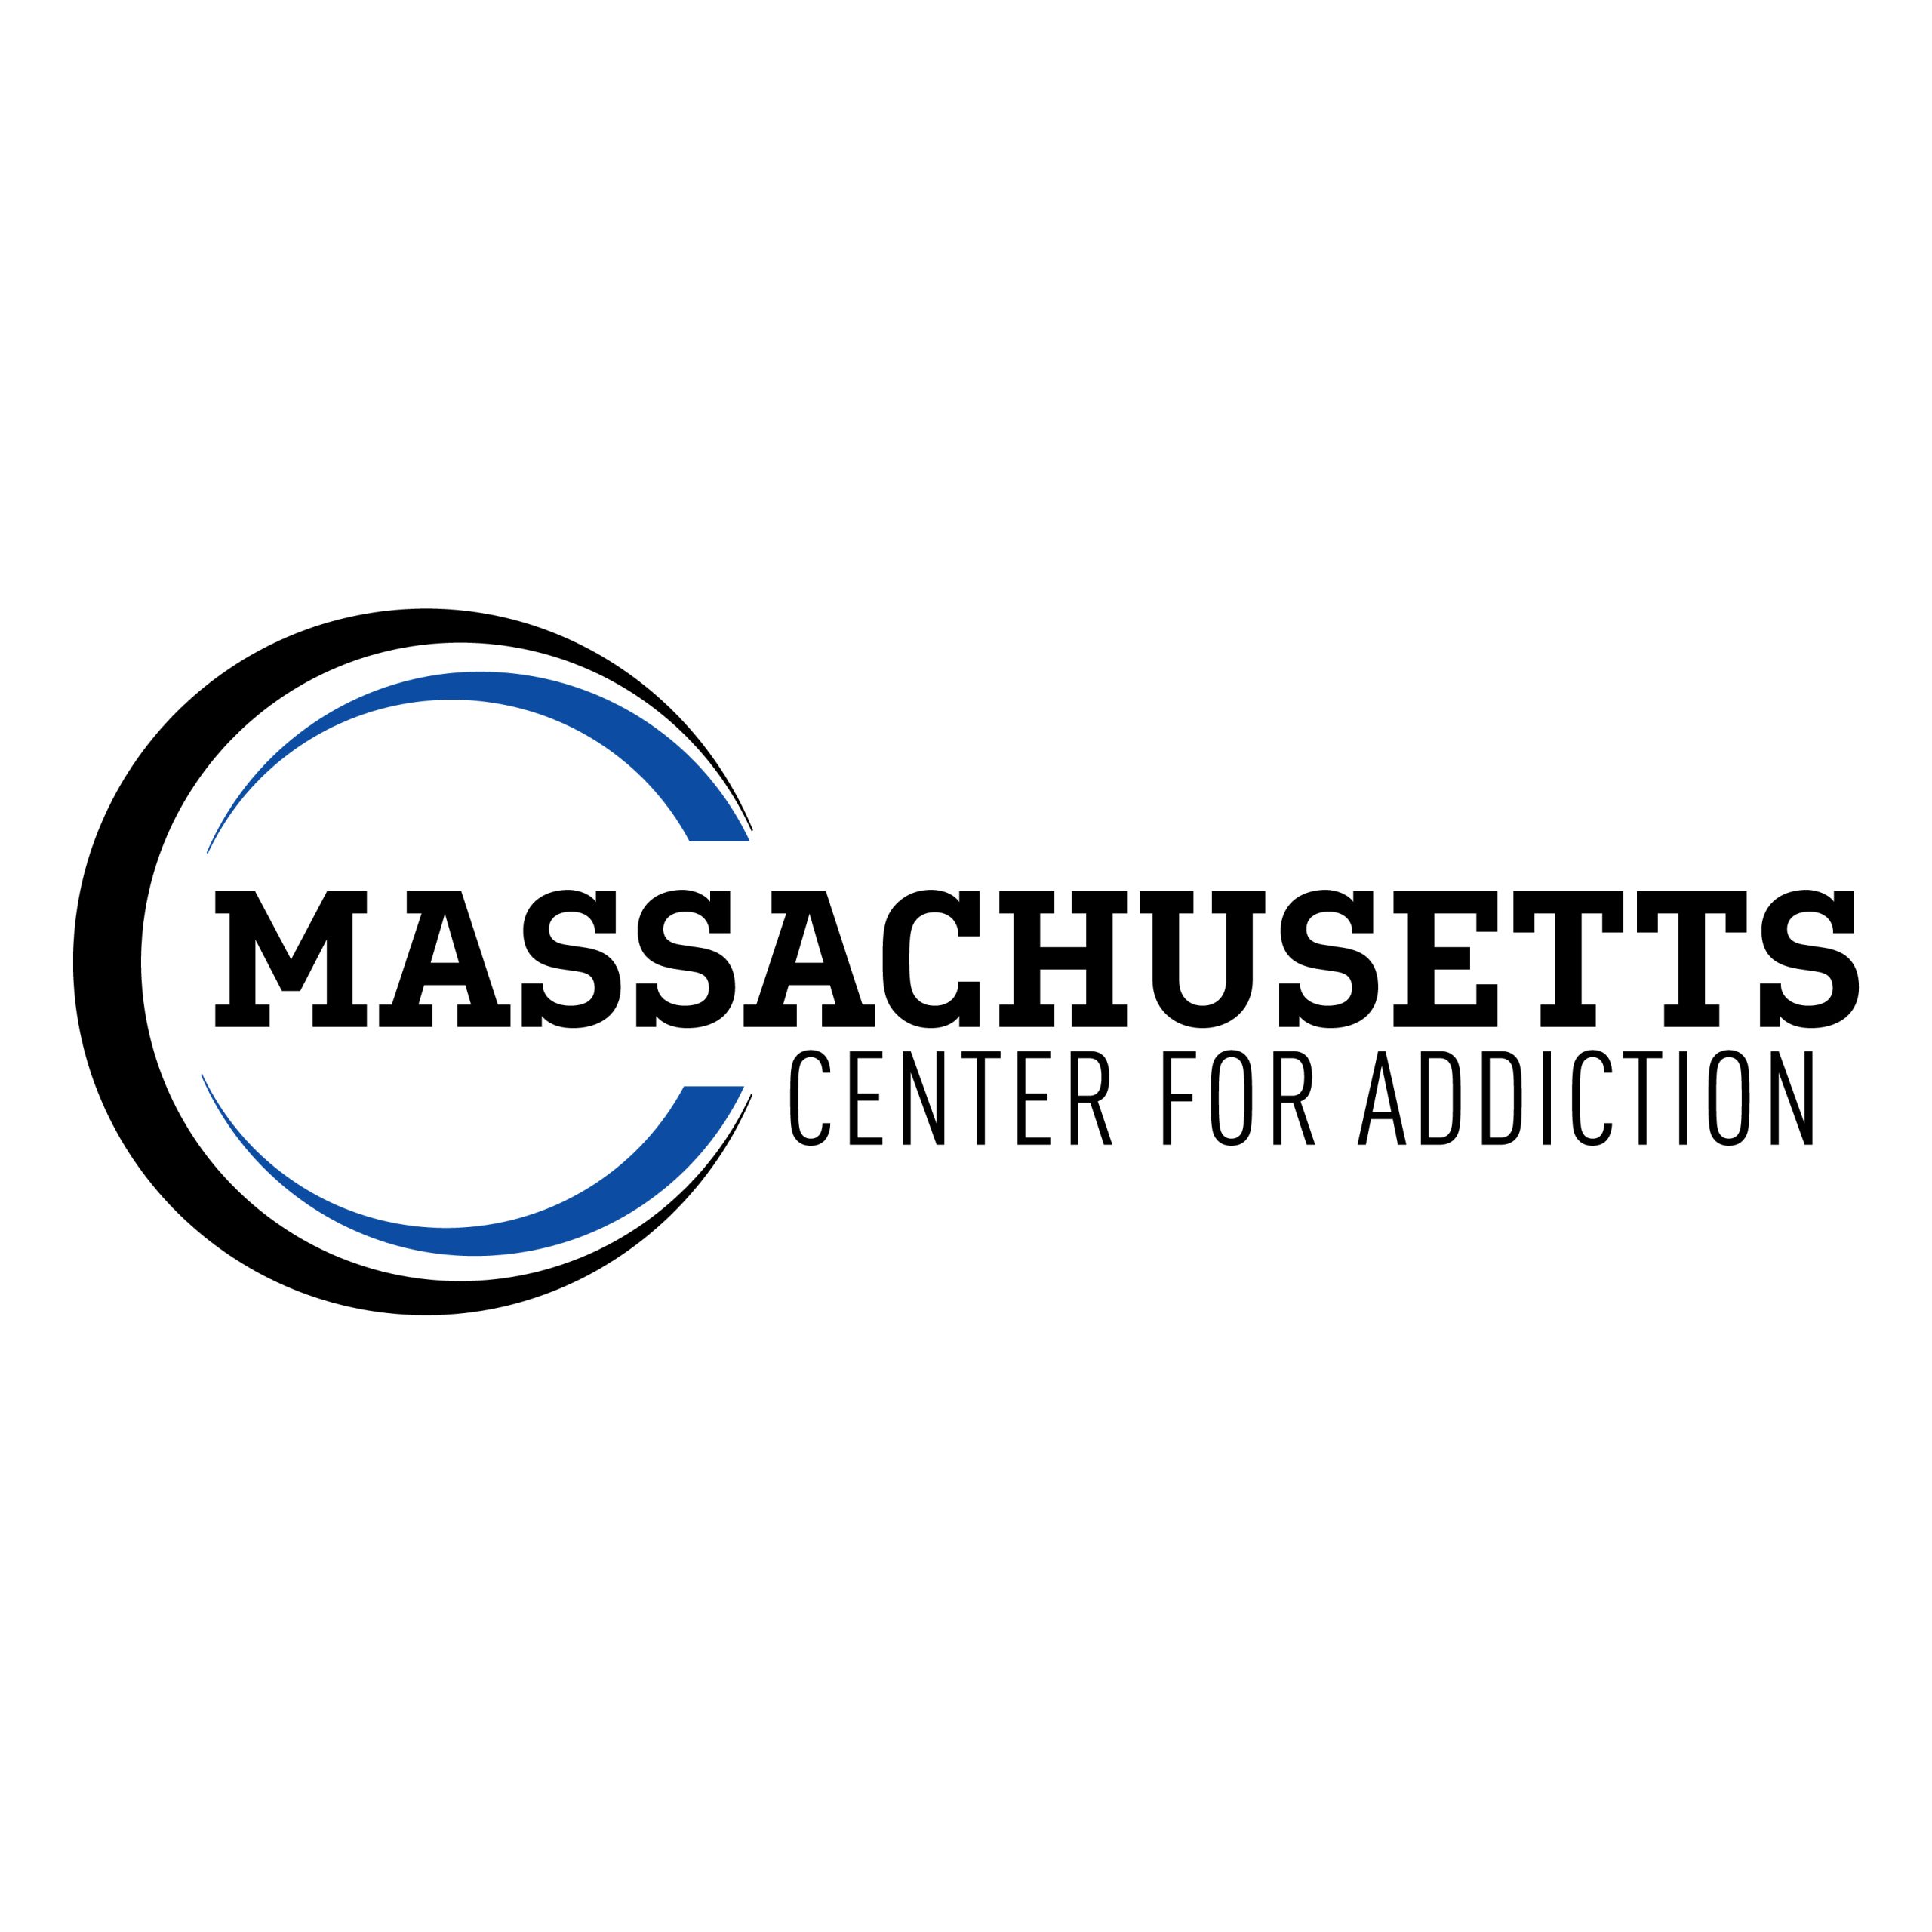 1304859923_massachusetts-center-for-addiction-logo.jpg